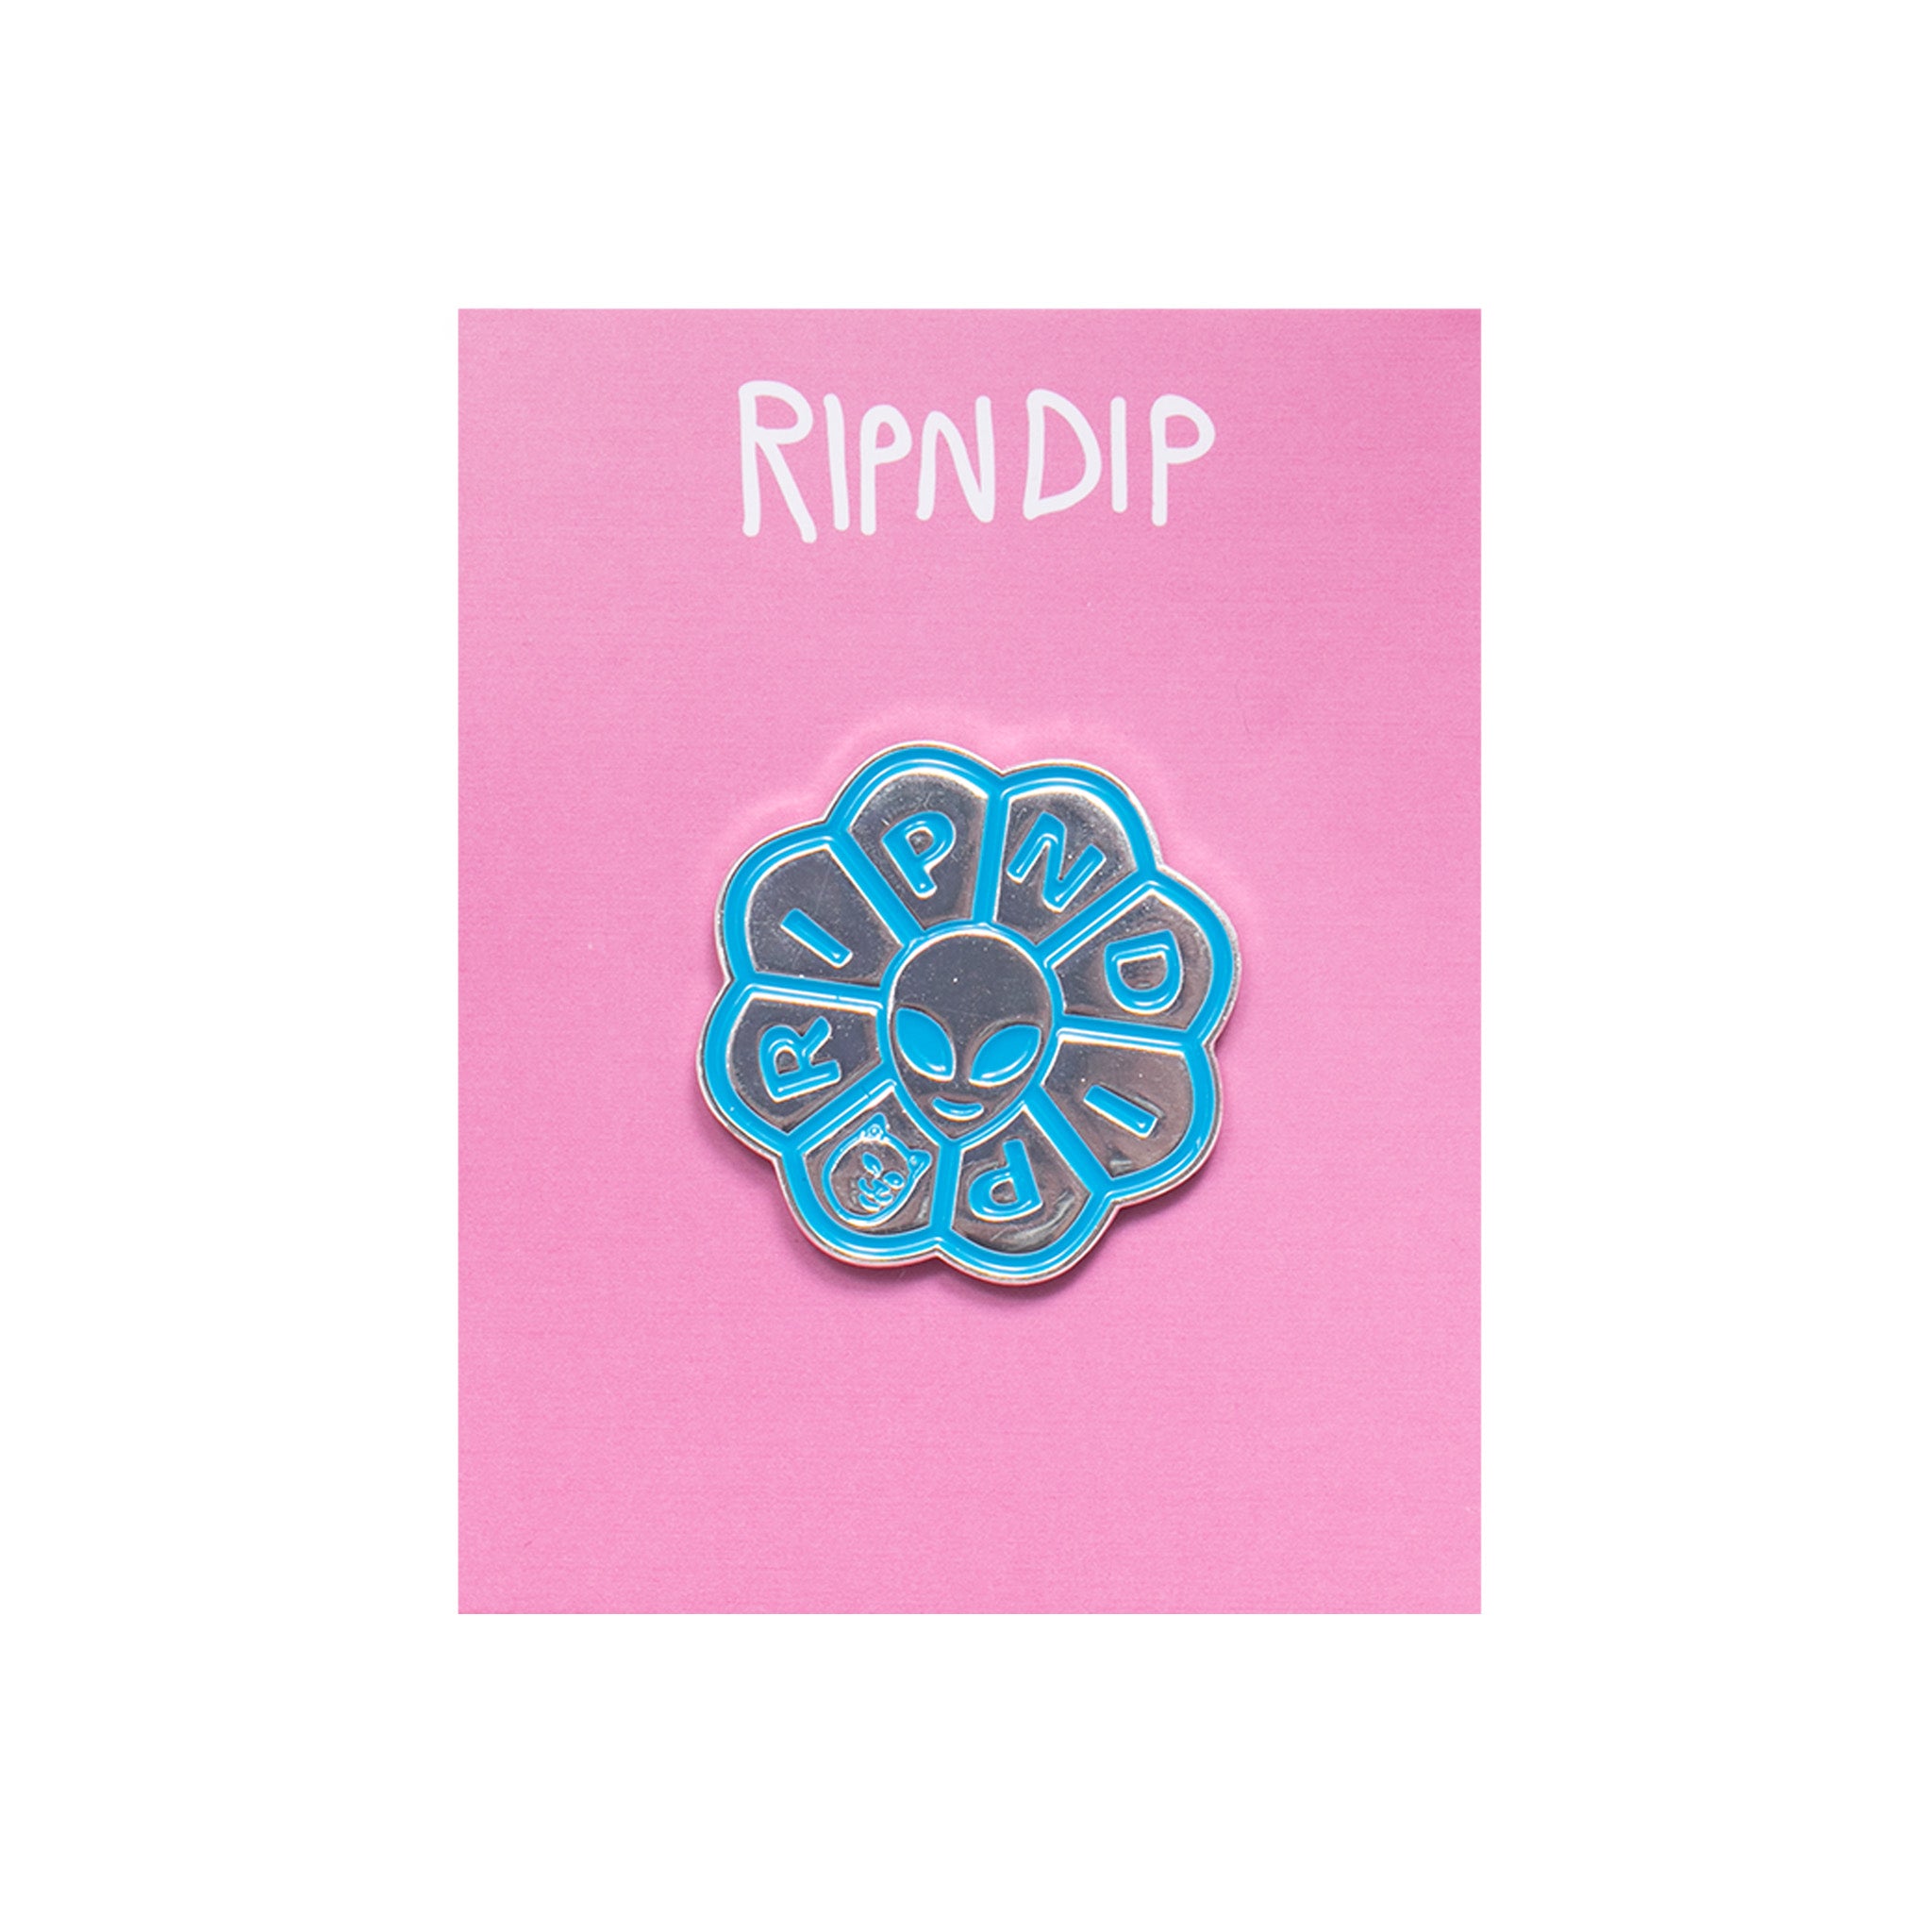 RIPNDIP Get A Grip Pin